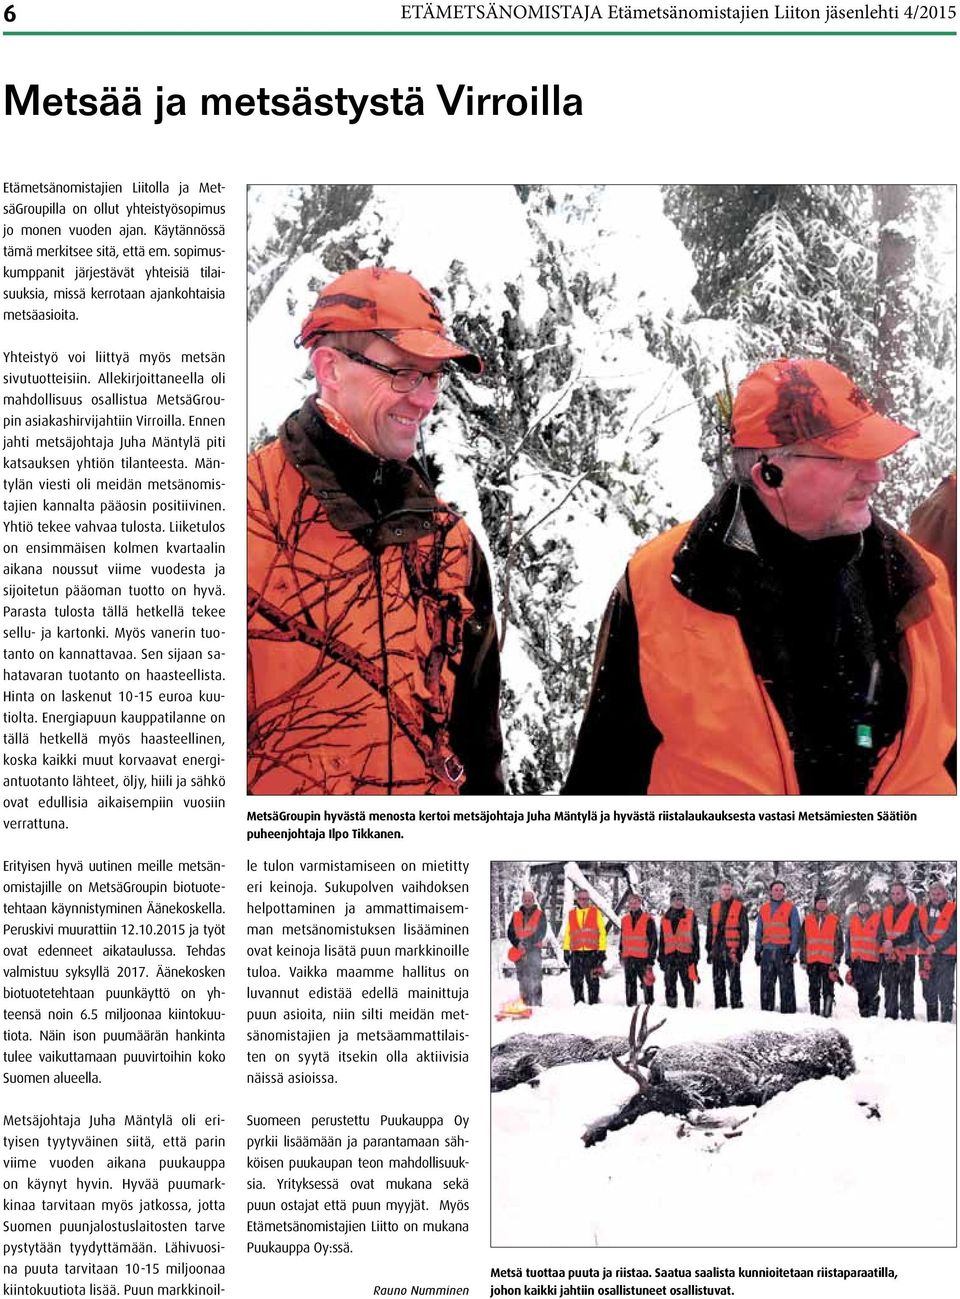 Allekirjoittaneella oli mahdollisuus osallistua MetsäGroupin asiakashirvijahtiin Virroilla. Ennen jahti metsäjohtaja Juha Mäntylä piti katsauksen yhtiön tilanteesta.